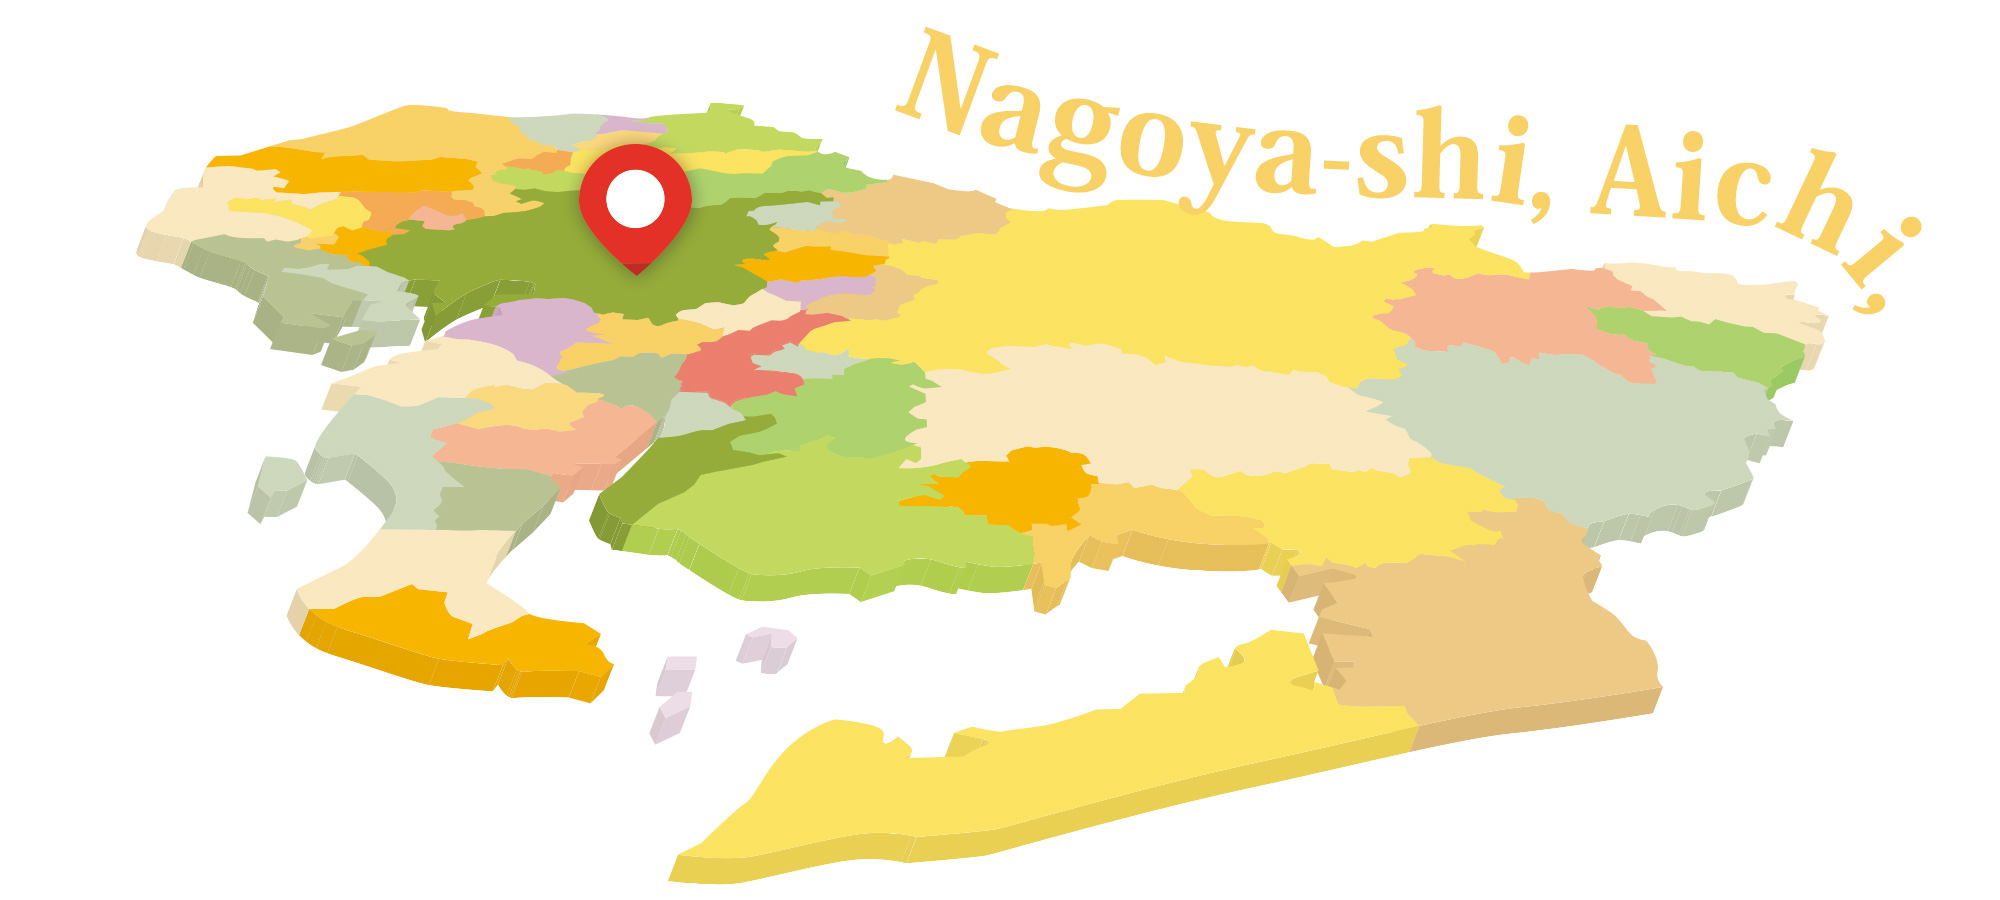 愛知県名古屋市でホームページの制作会社をお探しなら、Hasshin-Creatorsまでお問合せ下さい。